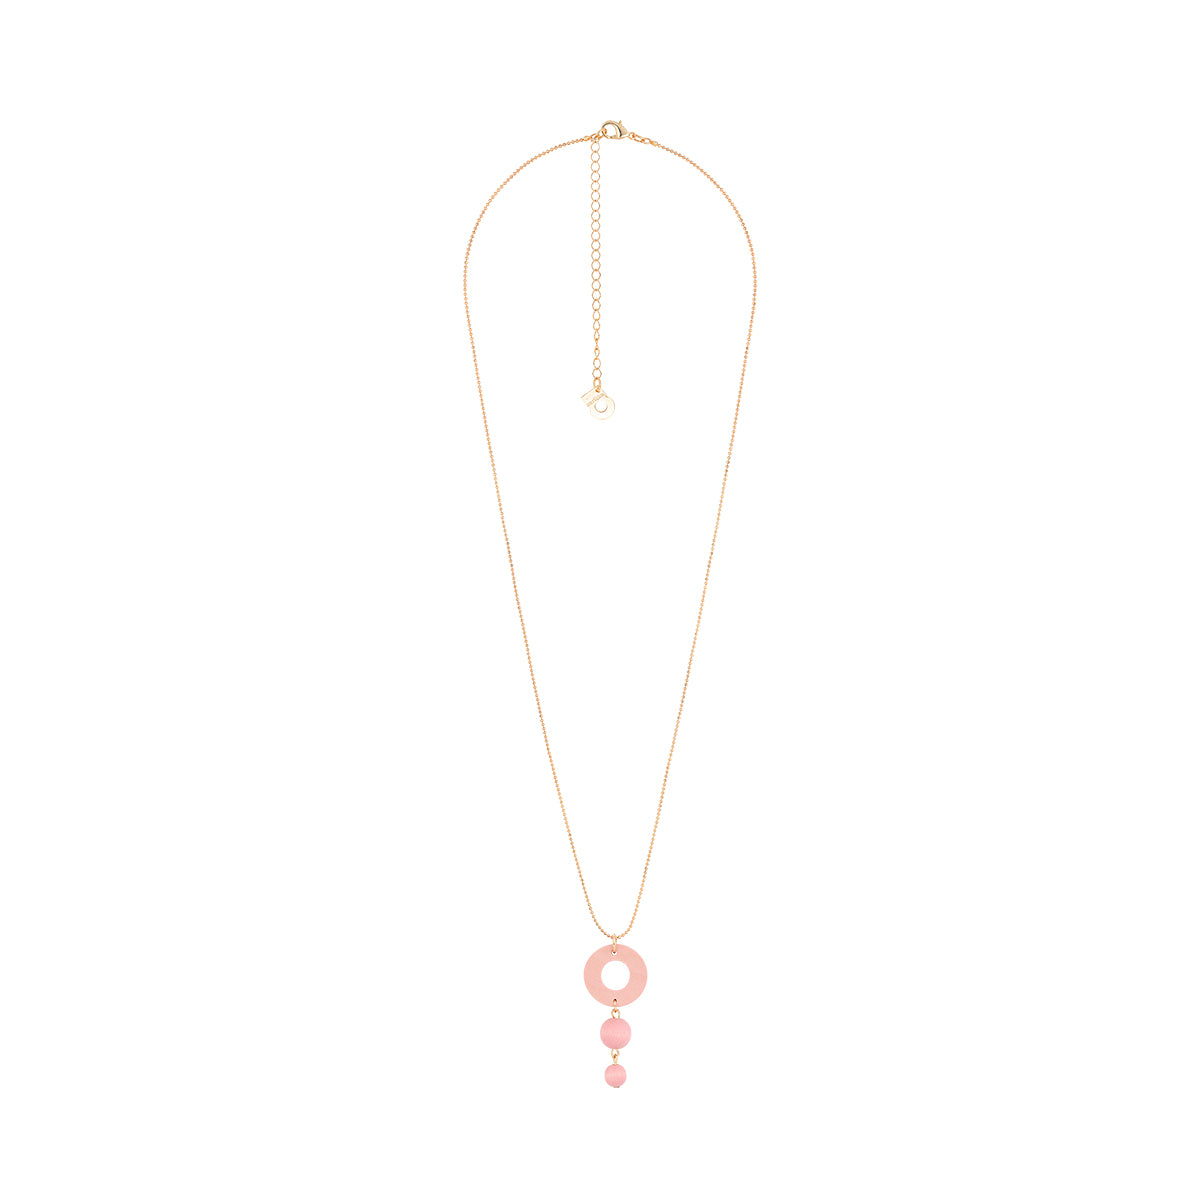 Irina pendant, pink and gold